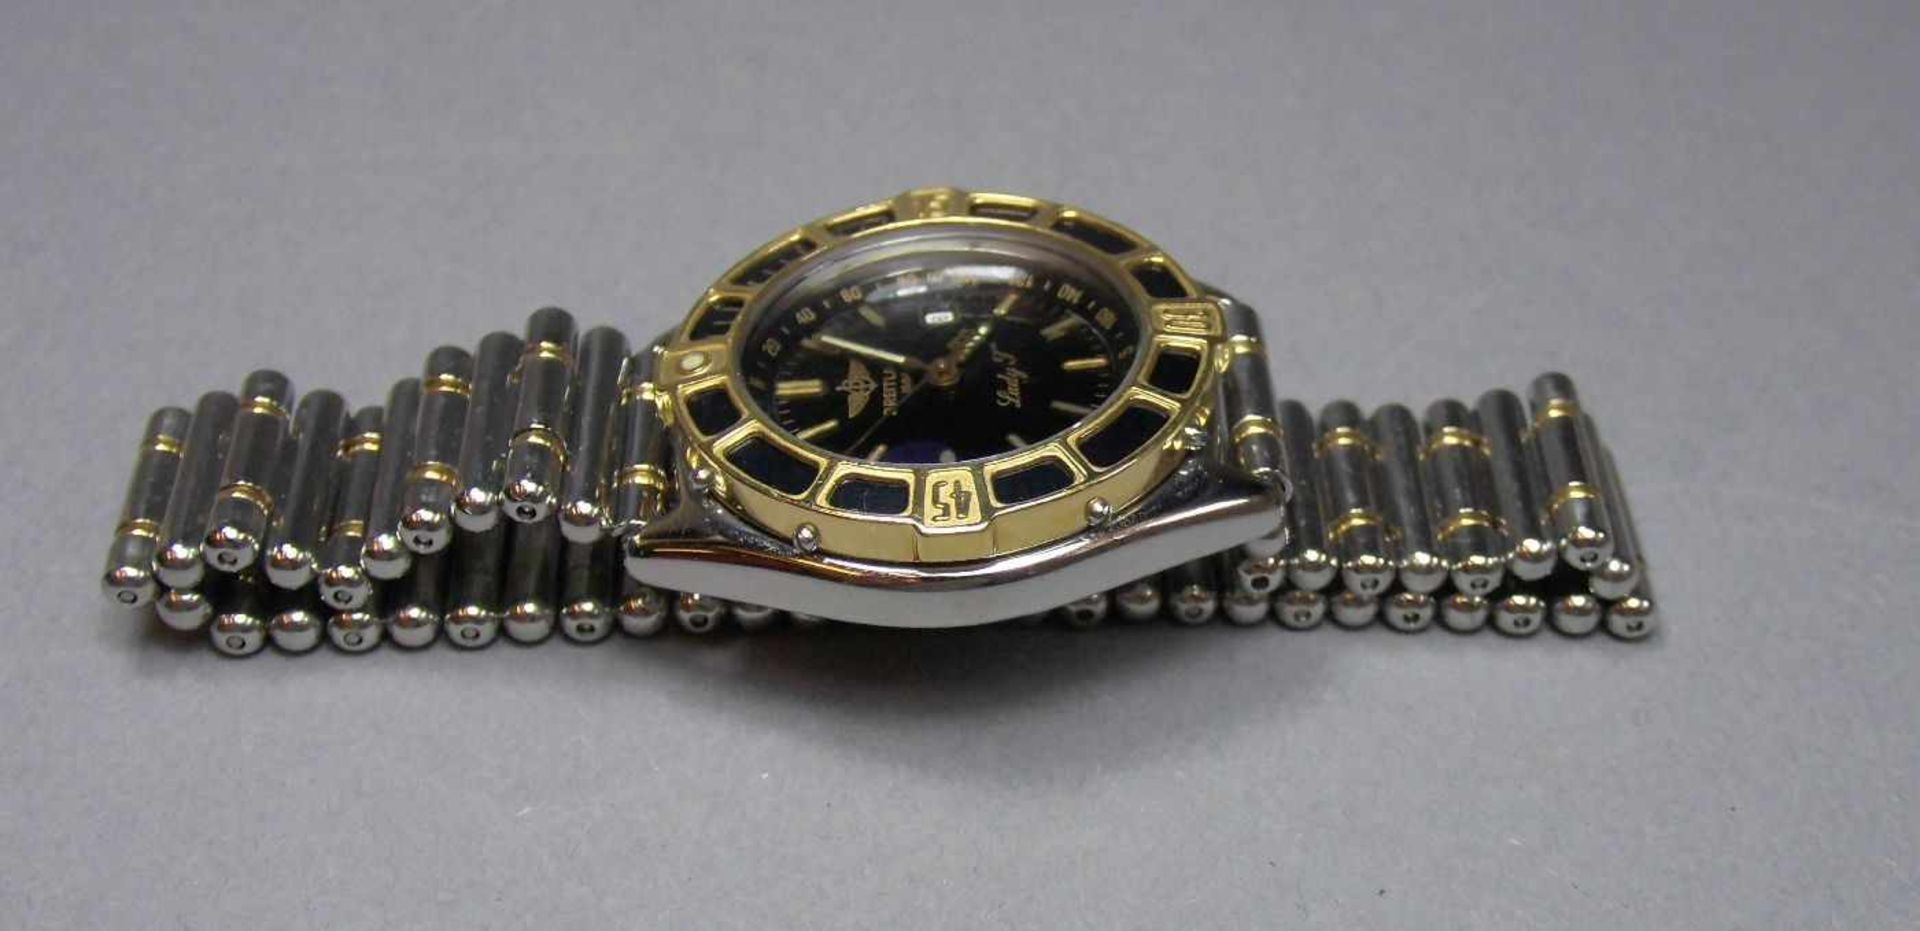 BREITLING "LADY J" ARMBANDUHR / wristwatch, Schweiz. Verschraubtes Stahlgehäuse mit drehbarer - Bild 6 aus 11